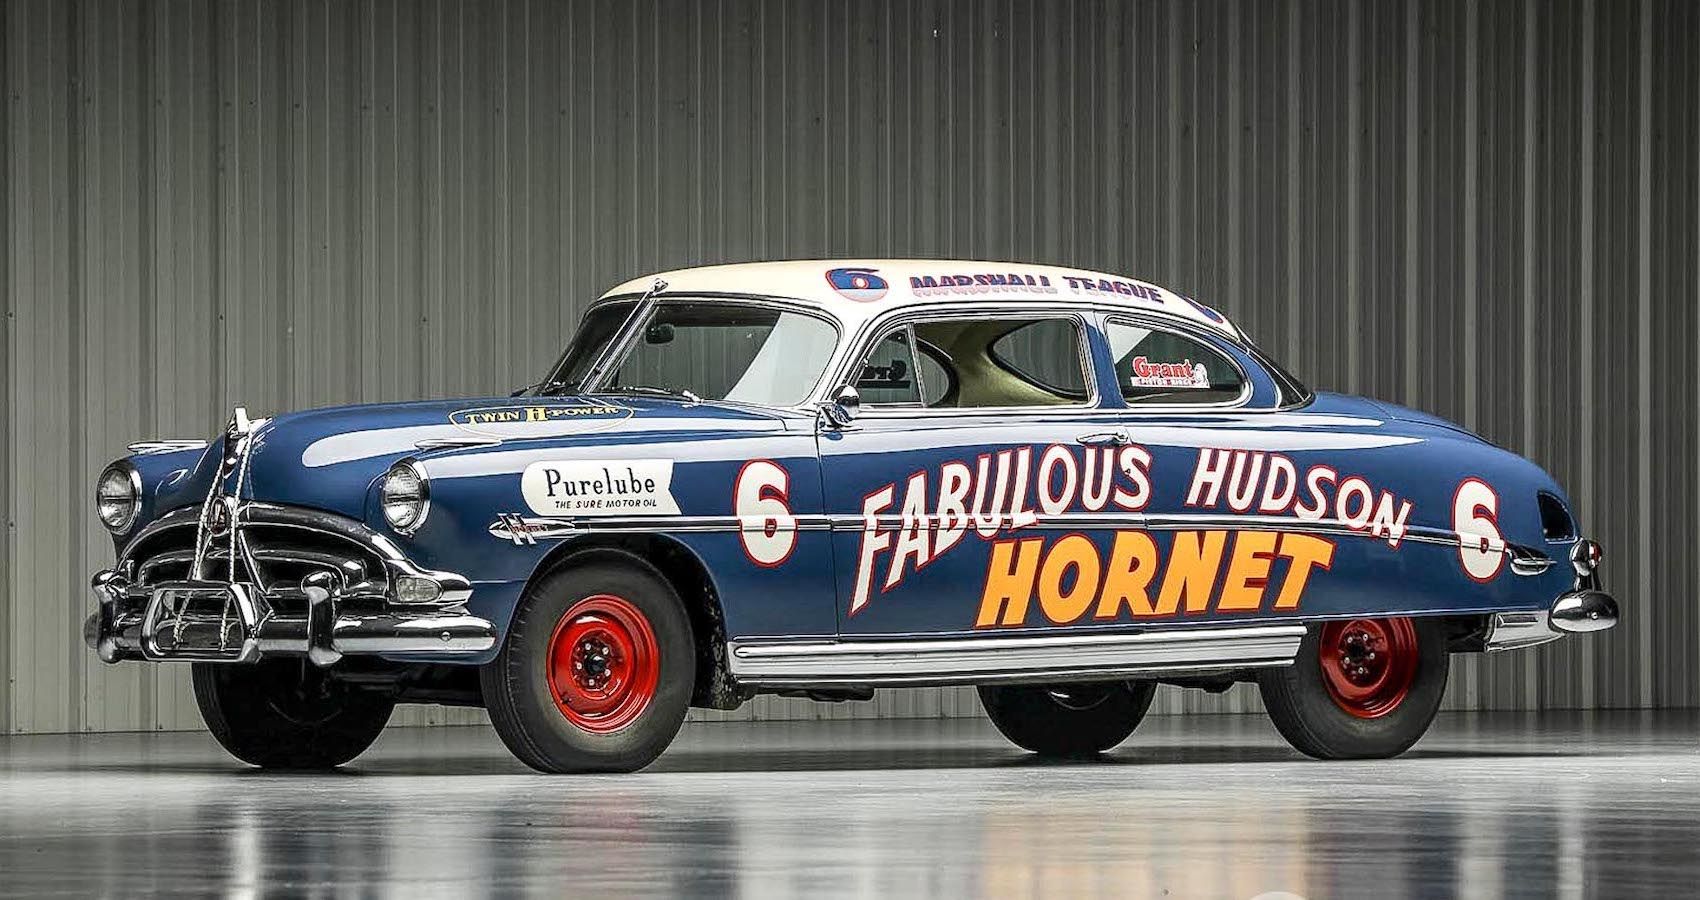 1952 Hudson Hornet “Fabulous Hudson Hornet” NASCAR Racer